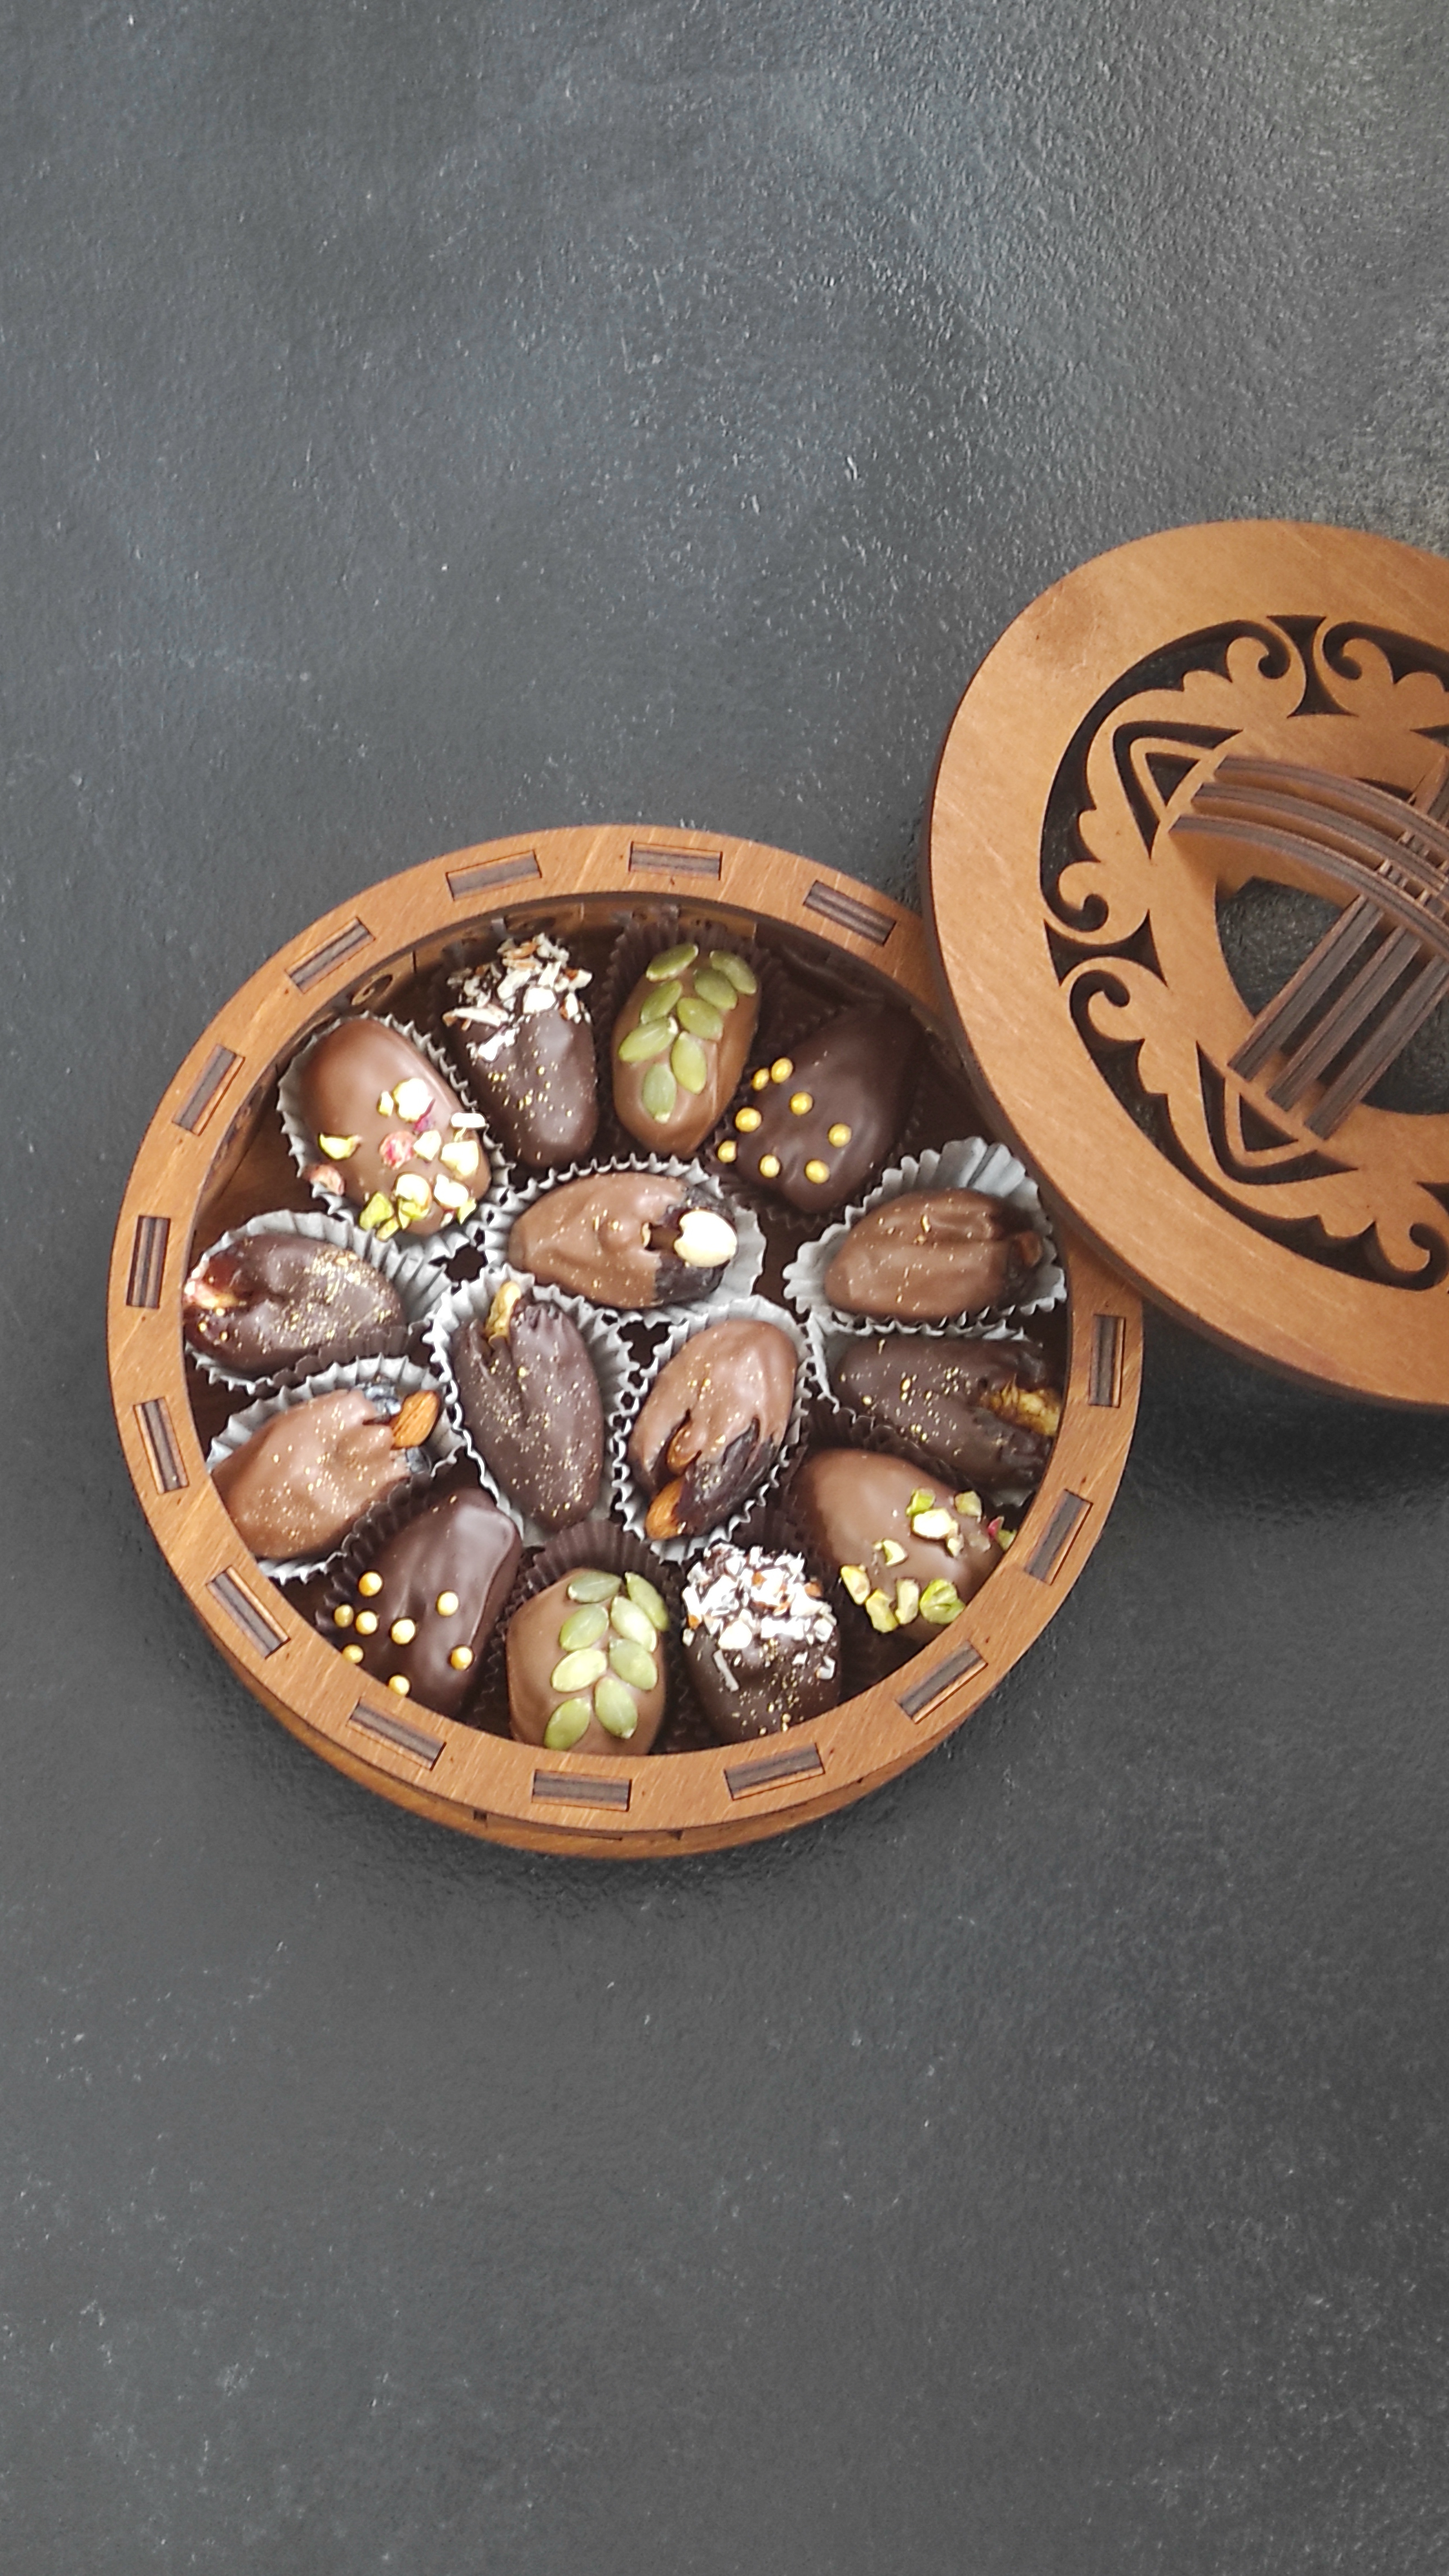 Юрта шкатулка, 15 фиников в бельгийском шоколаде  с доставкой по Алматы